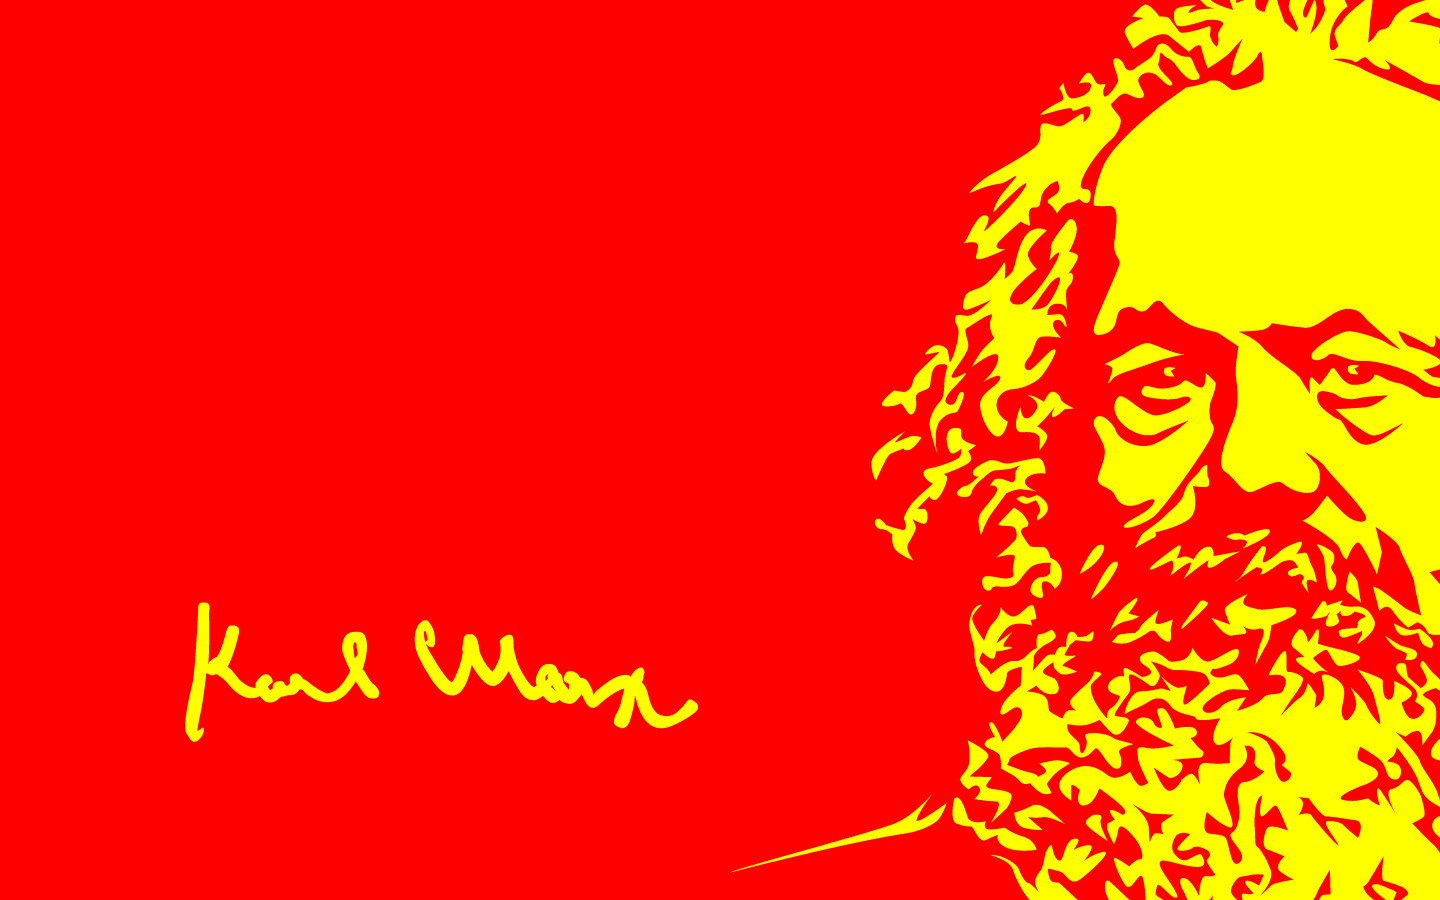 Karl Marx by zoe wand mansfield on Prezi